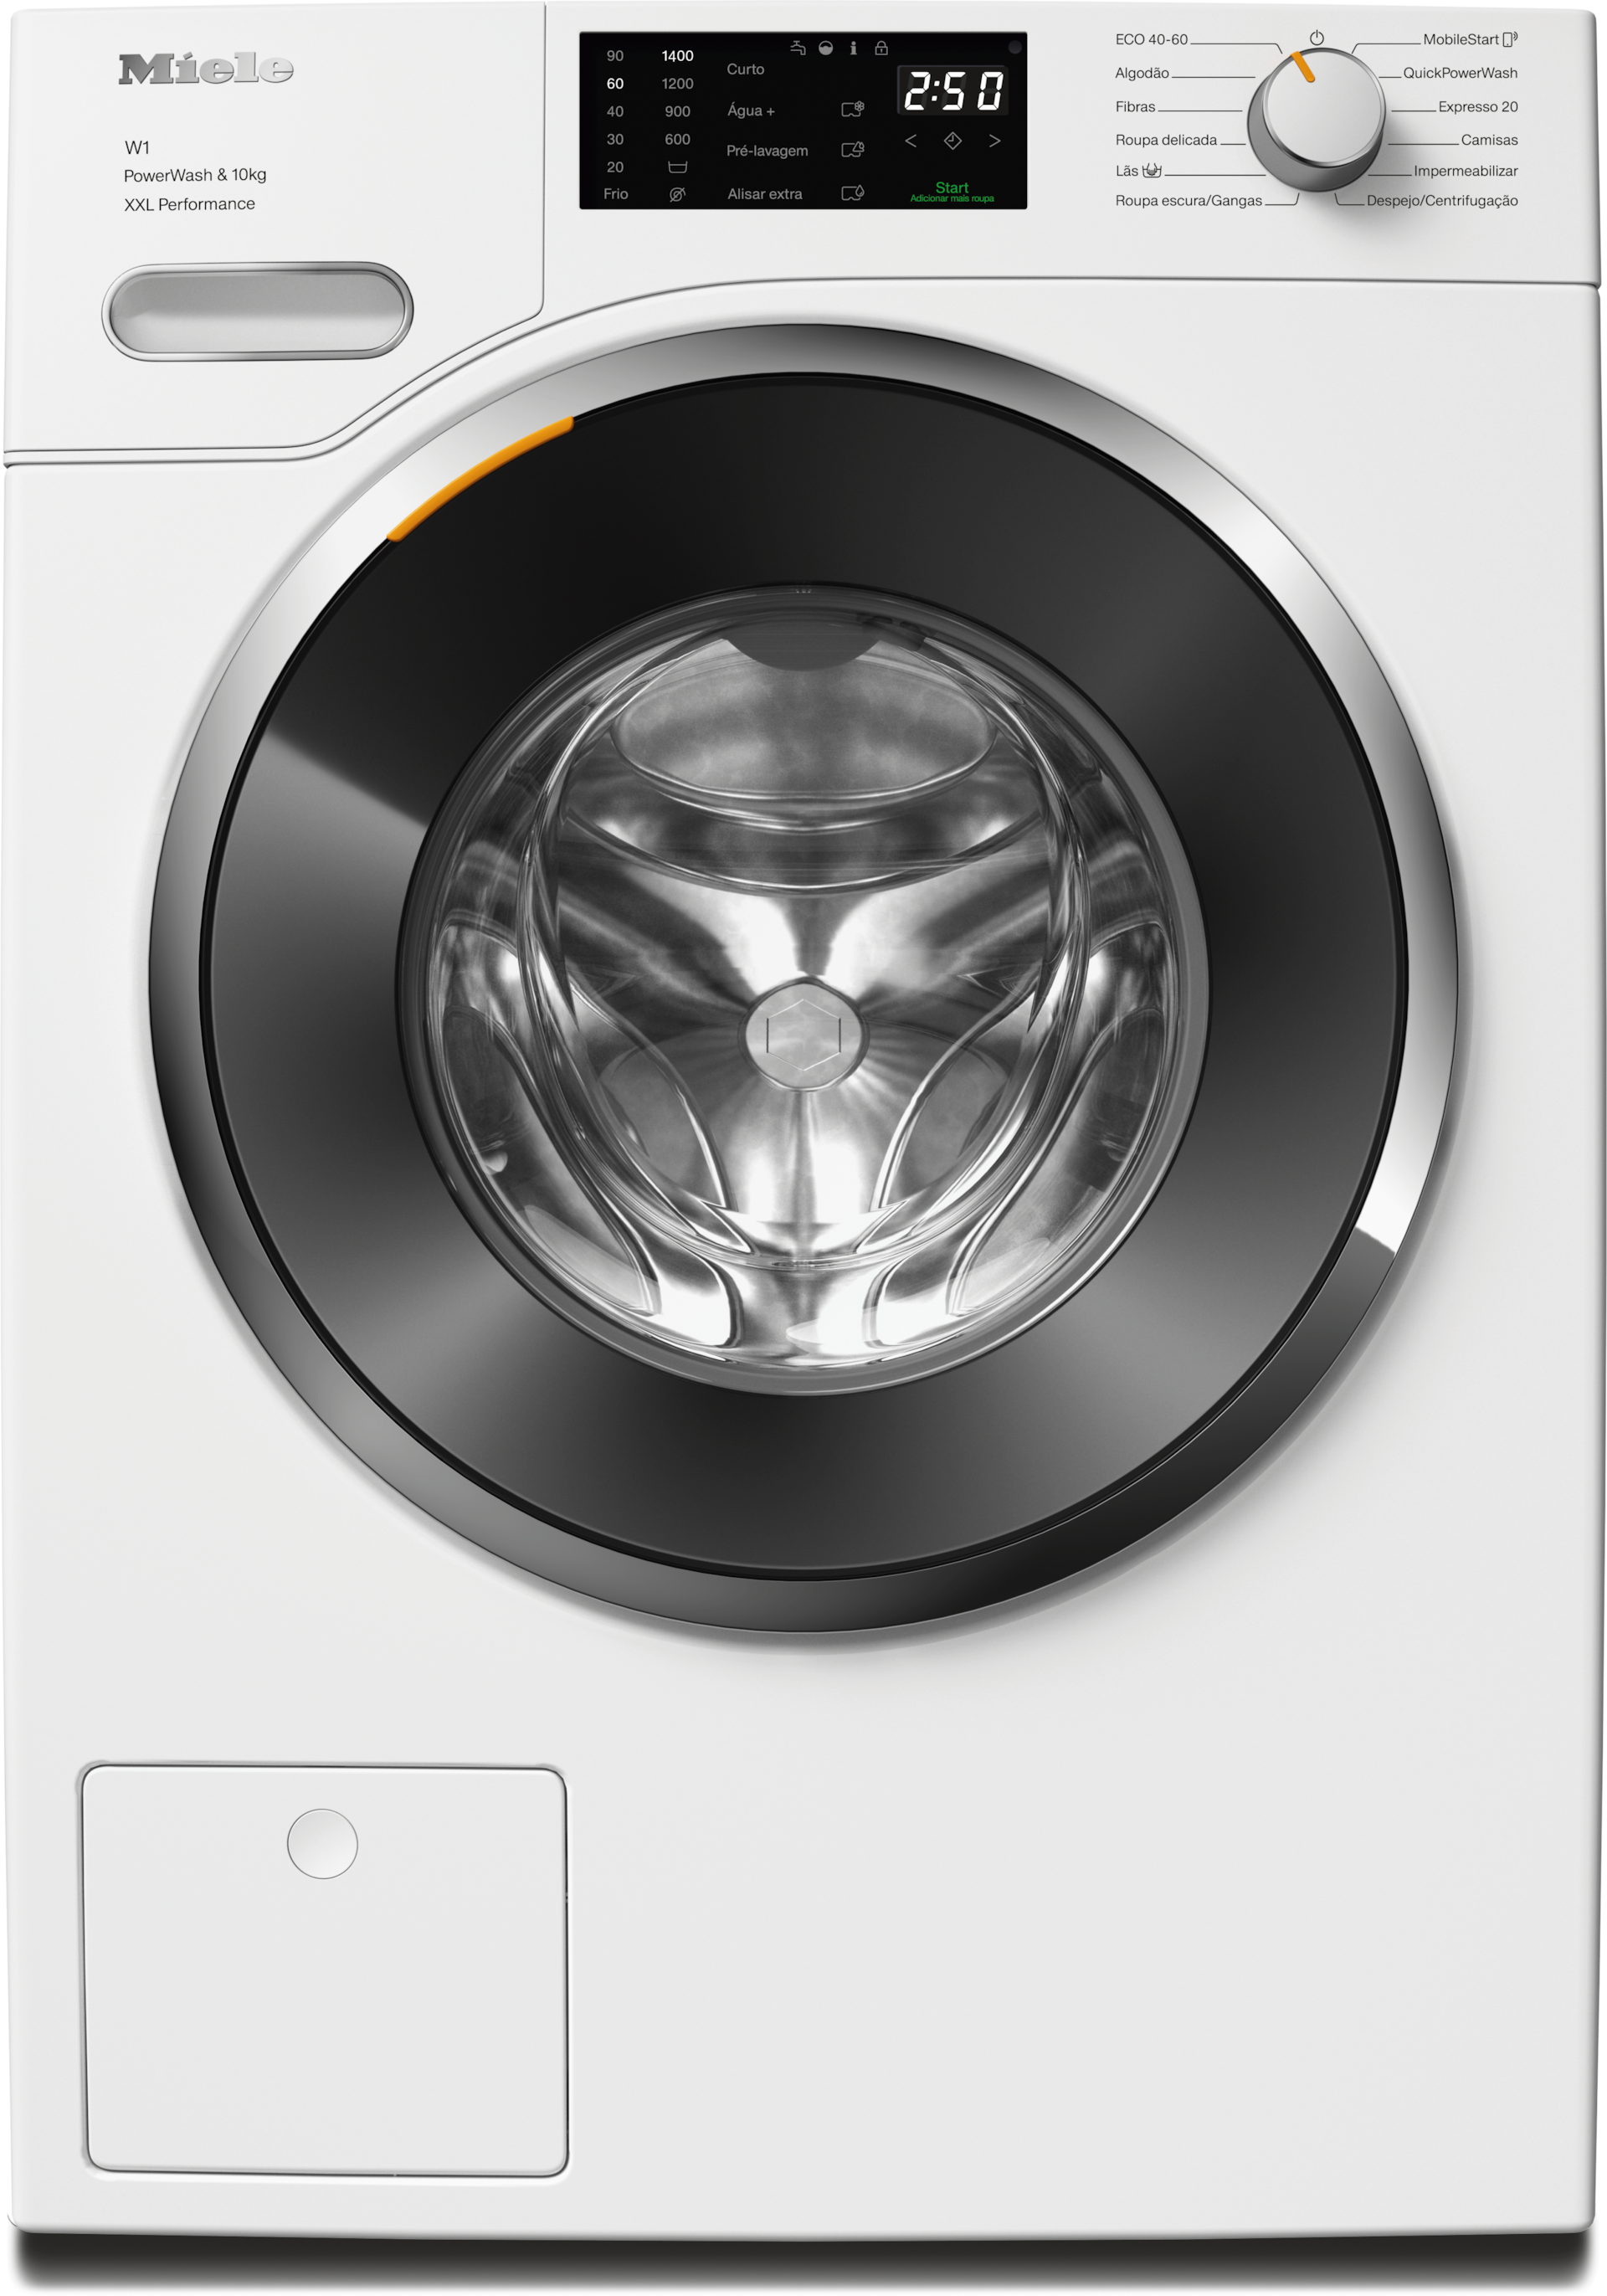 Máquinas de lavar roupa - WWK360 WCS PWash&10kg Branco lótus - 1